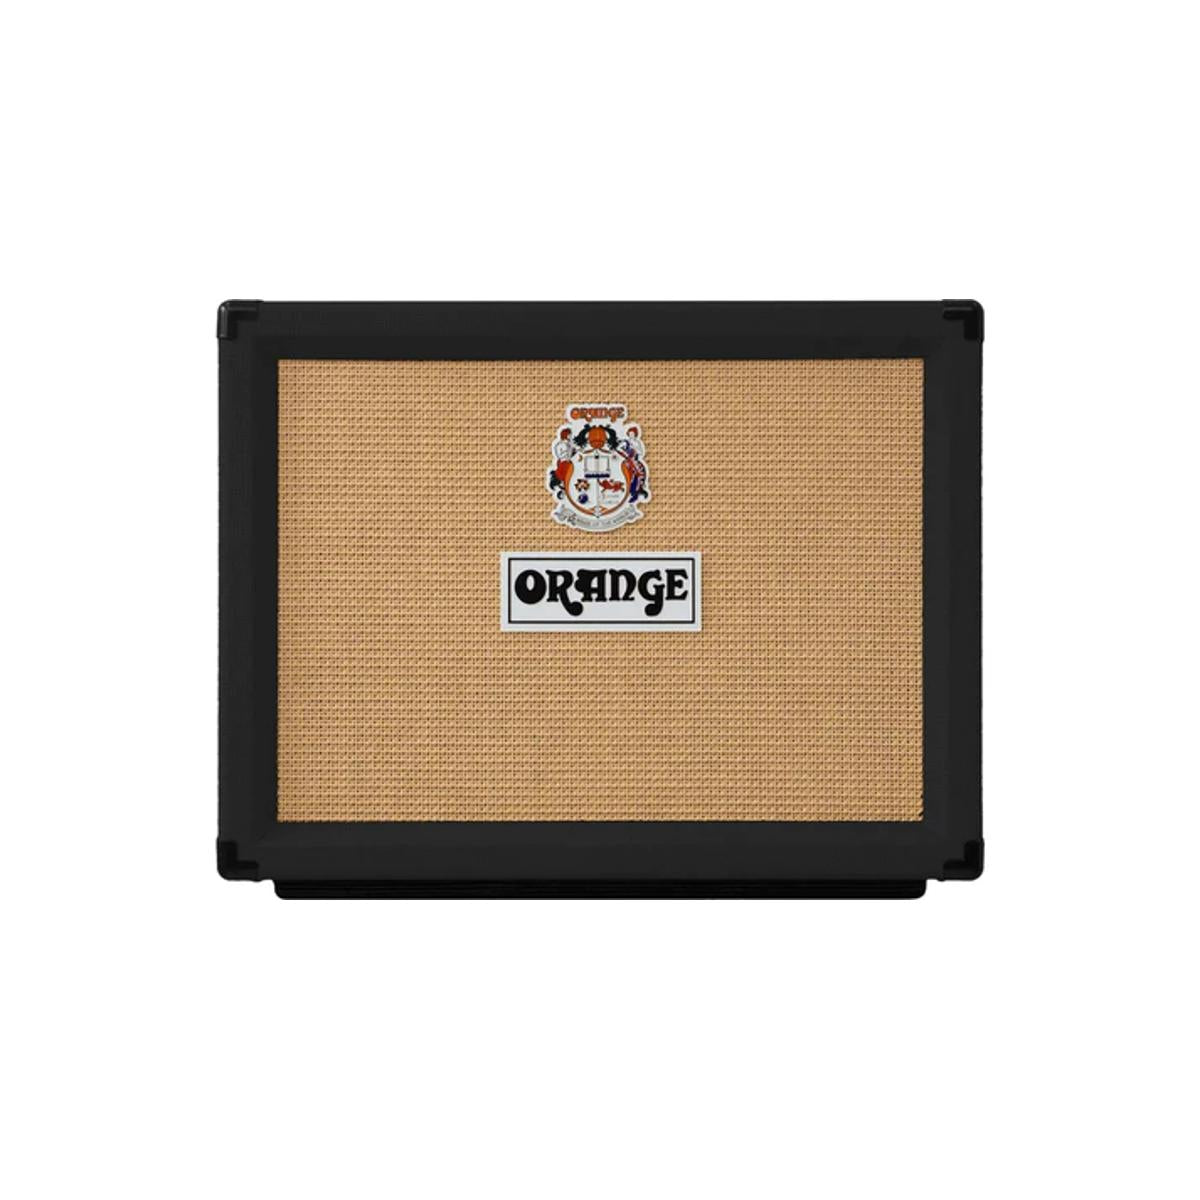 Orange Rocker 32 Guitar Amplifier 32w 2x10inch Combo Amp Black